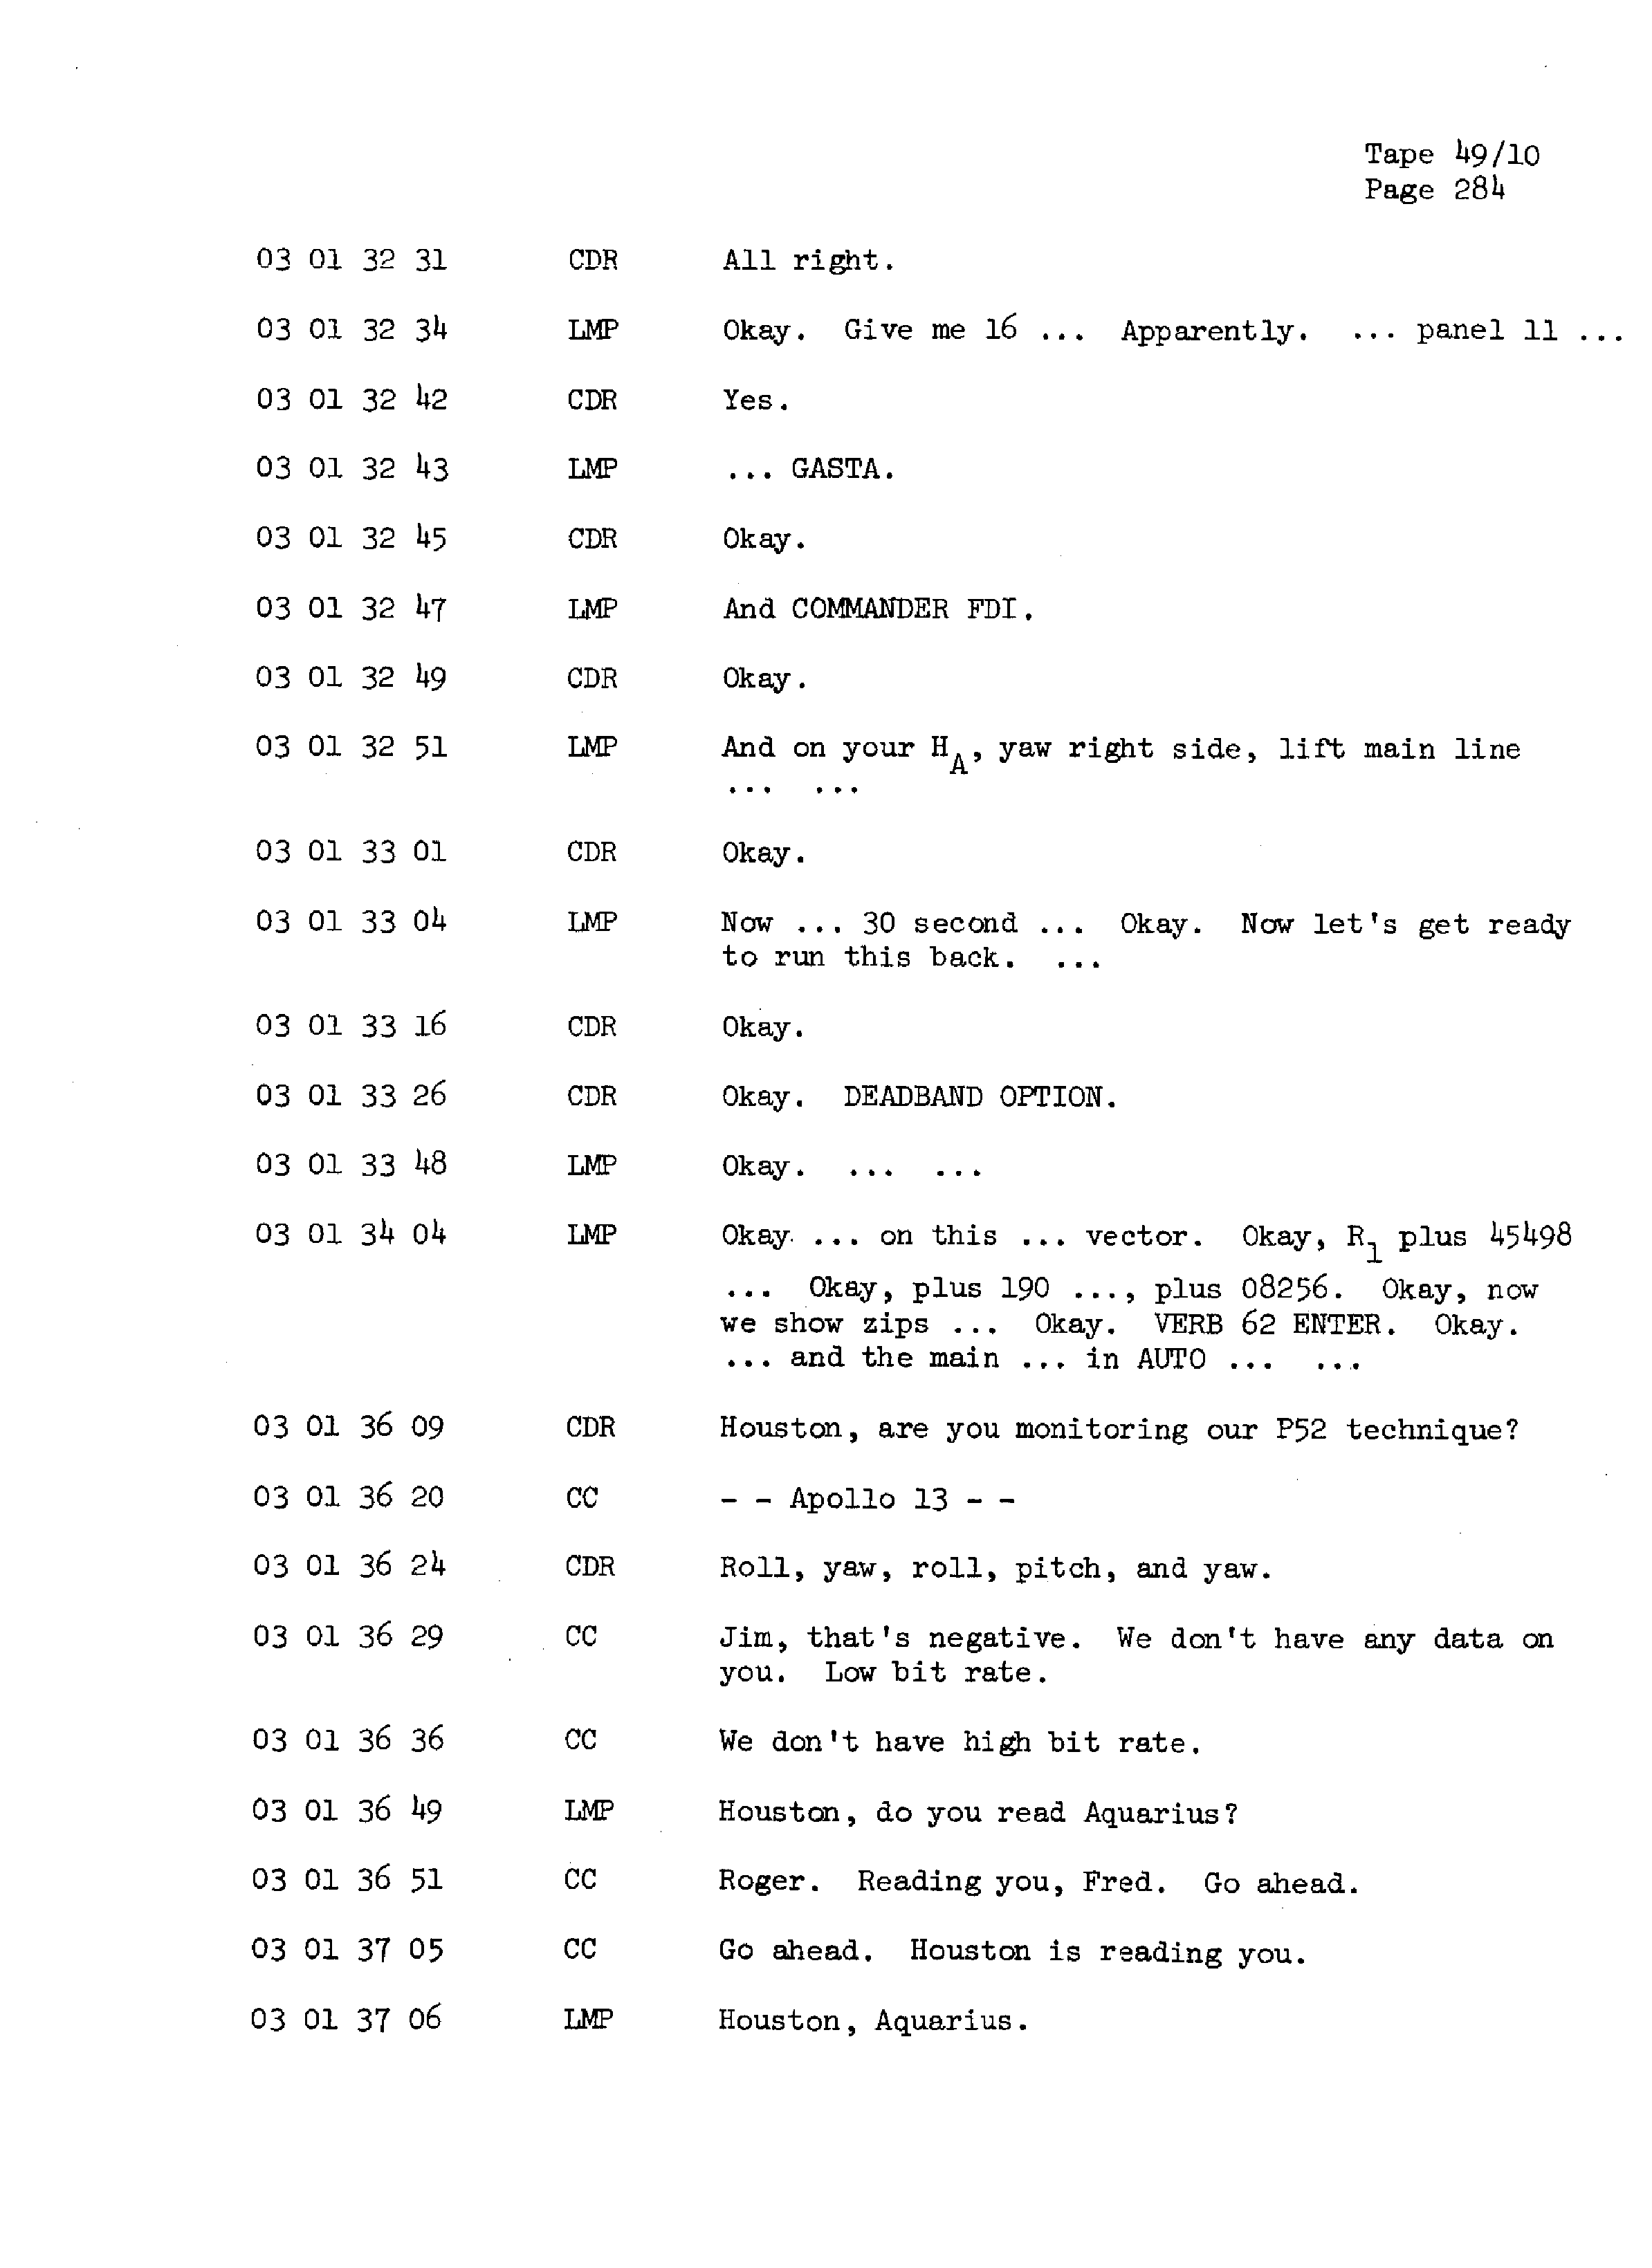 Page 291 of Apollo 13’s original transcript